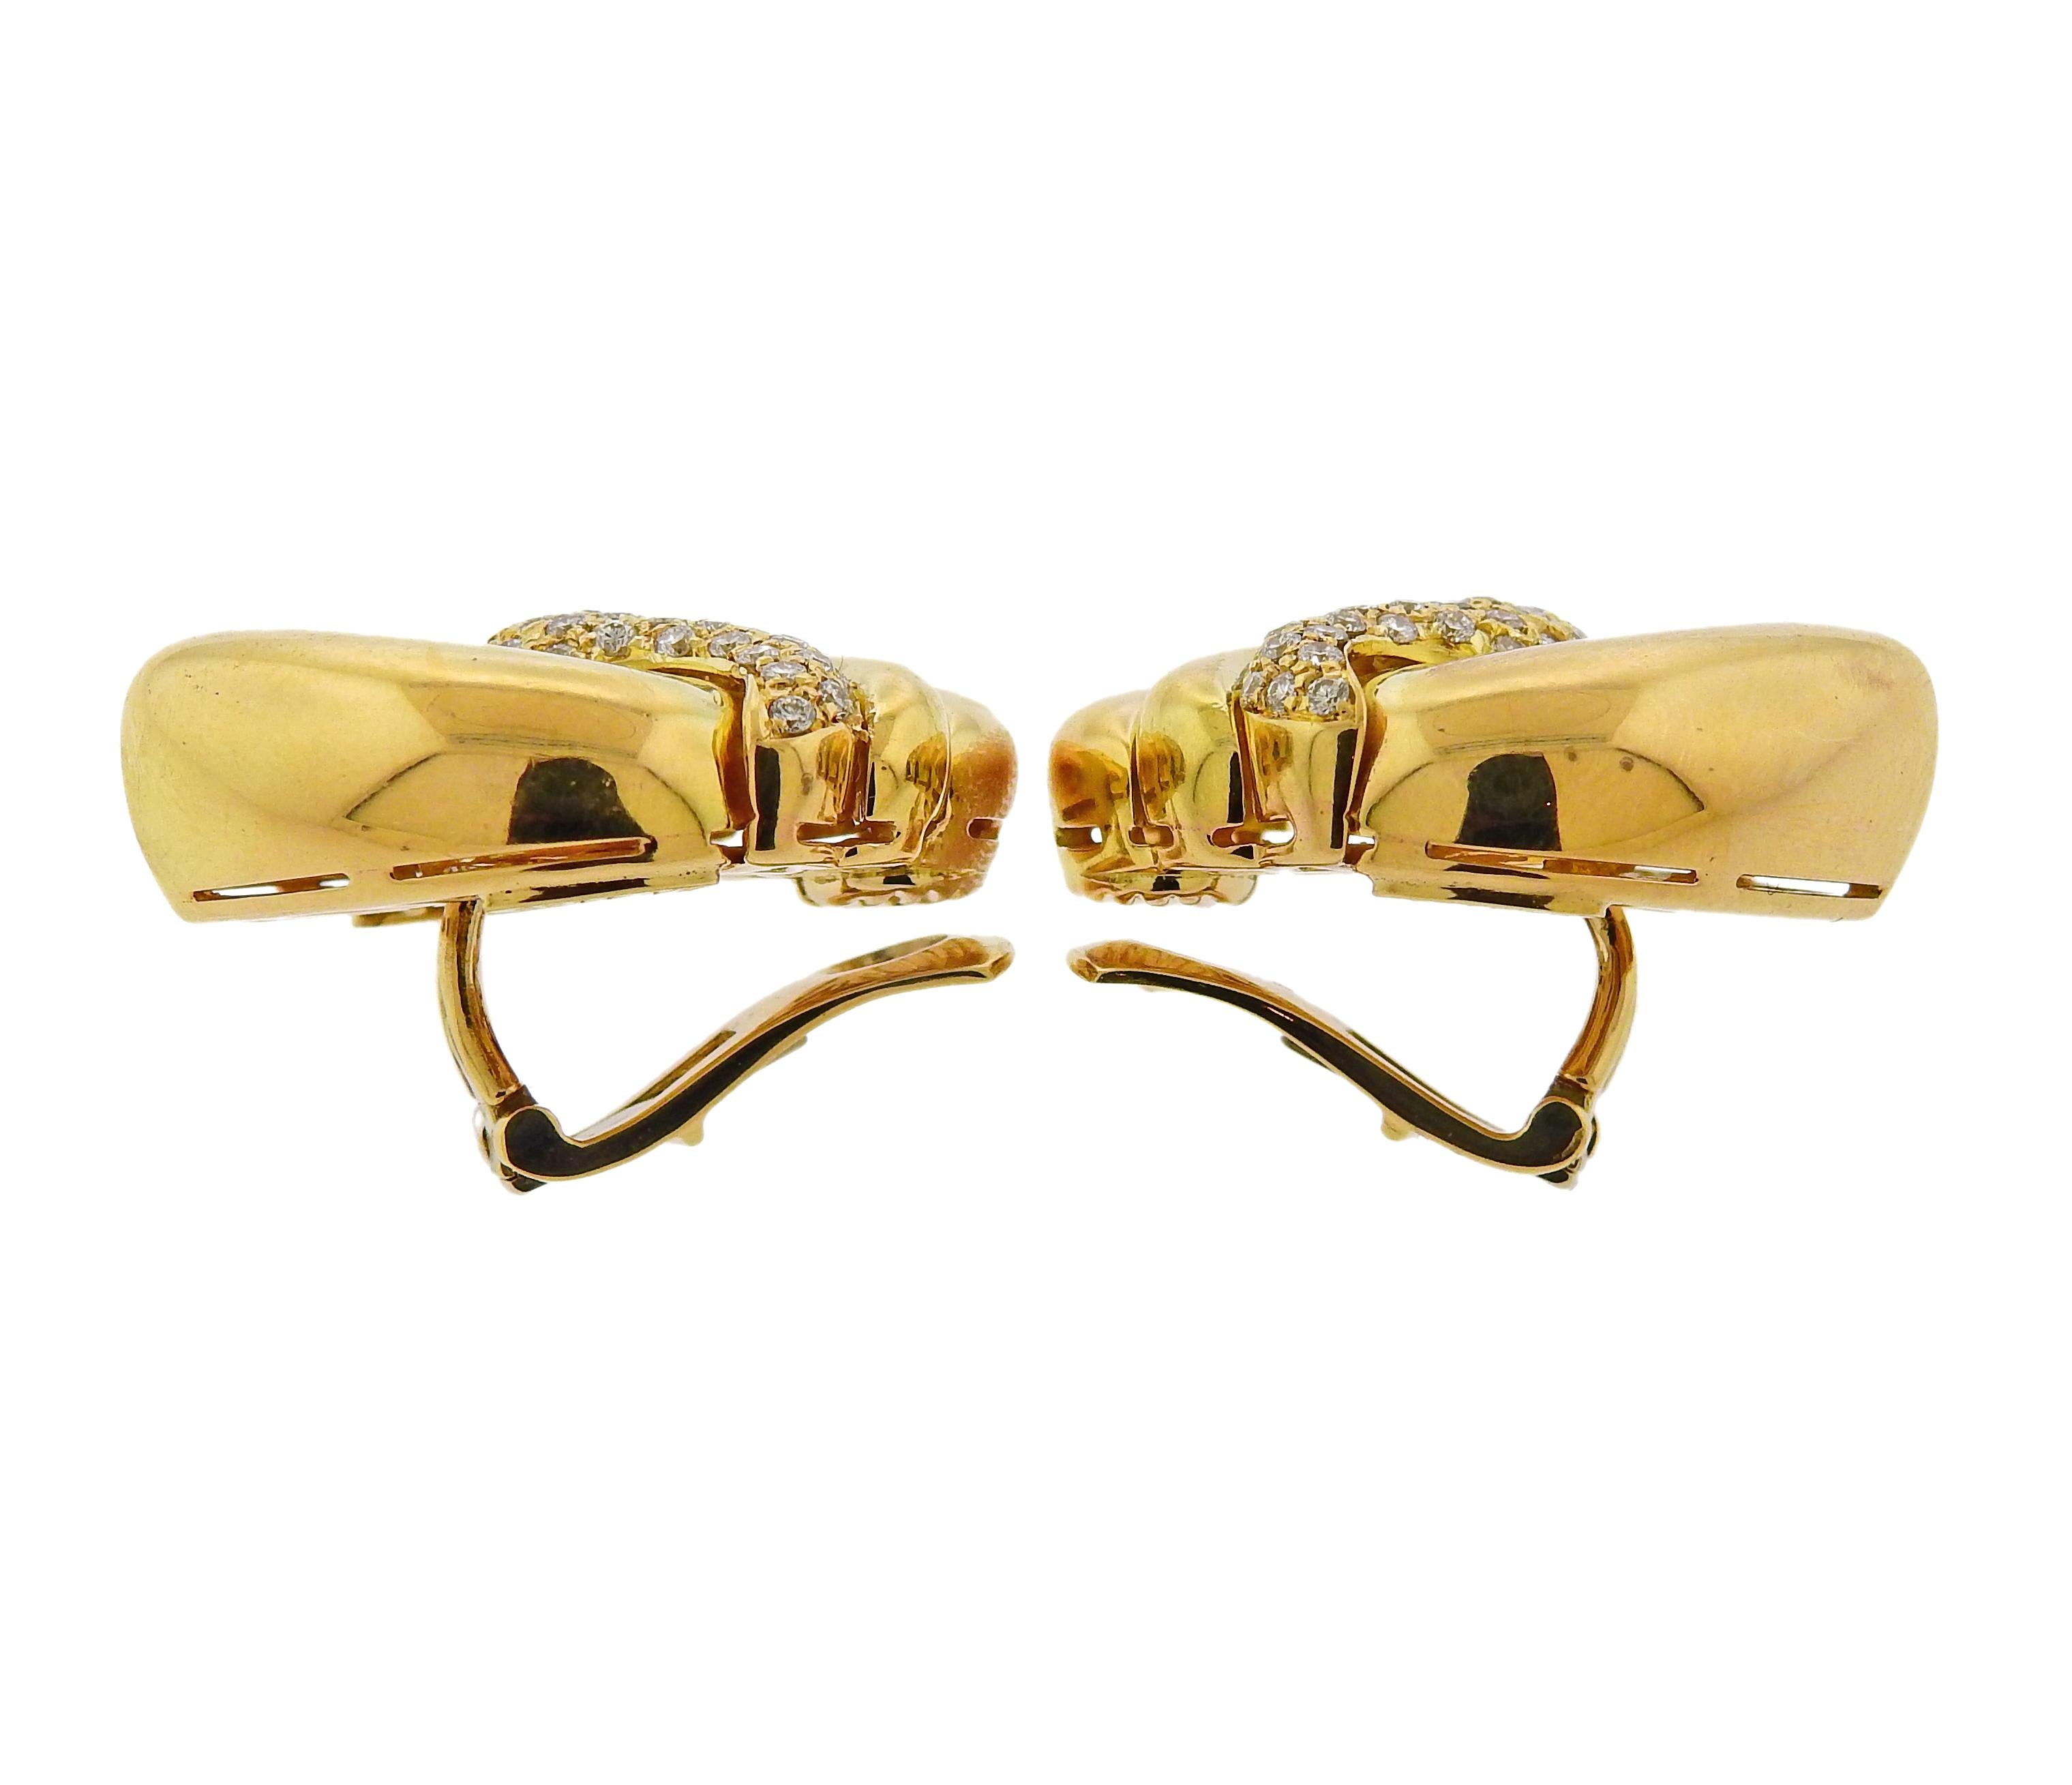 Paar Doppio Cuore-Ohrringe aus 18 Karat Gelbgold von Bulgari, verziert mit ca. 0,80 ct. an Diamanten. Die Ohrringe sind 28 mm x 25 mm groß.  Markiert Bvlgari, 750, BA 4425. Wiegt 39,3 Gramm.

SKU#E-00795